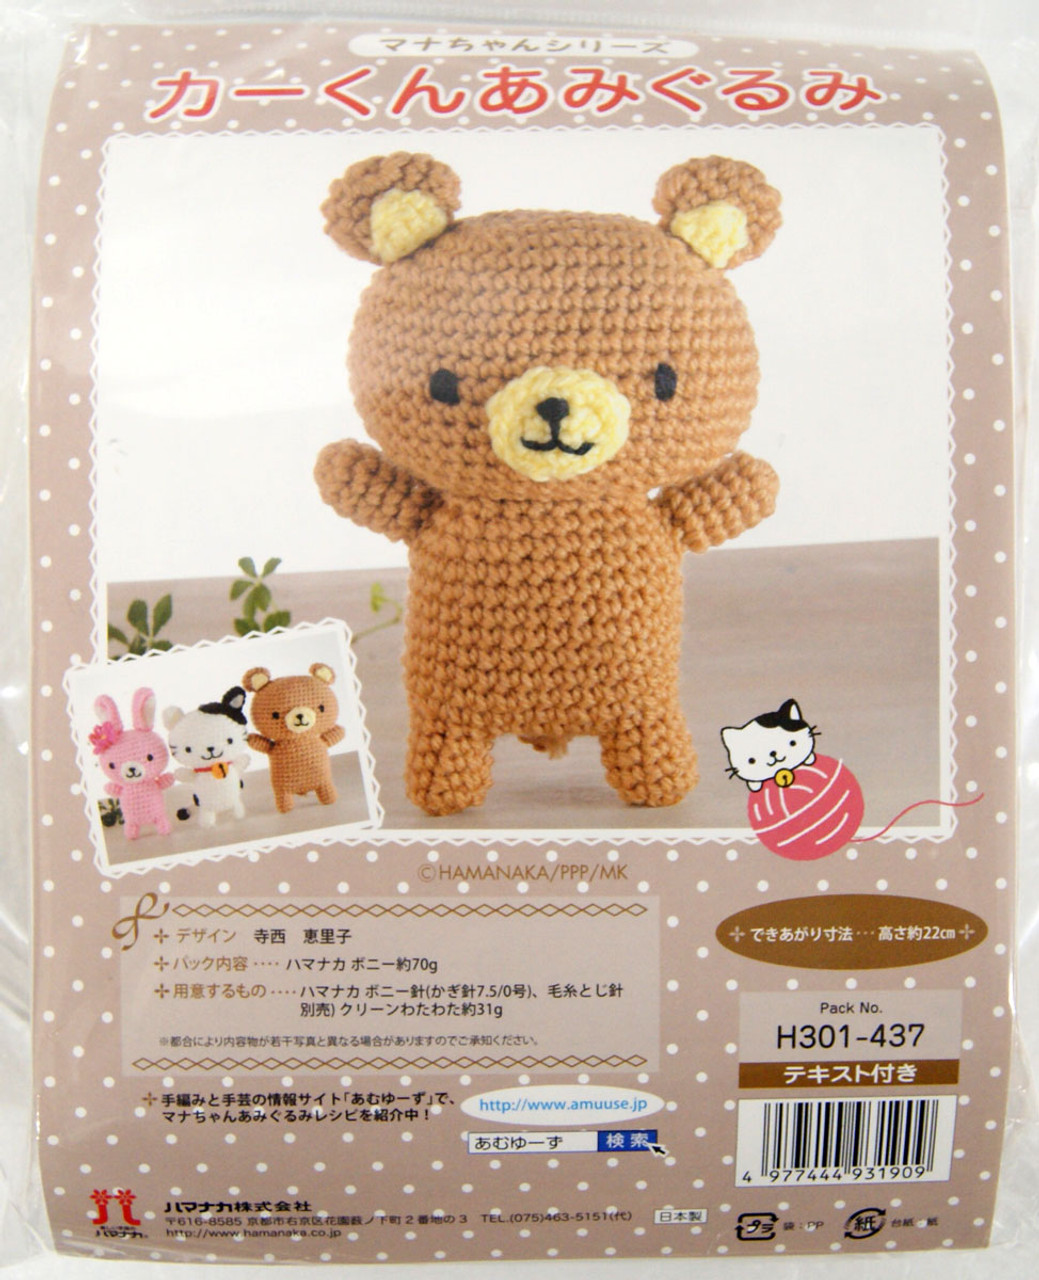 Hamanaka Amiami Both Crochet Easily 5/0-7/0 Issue (Japan Import)